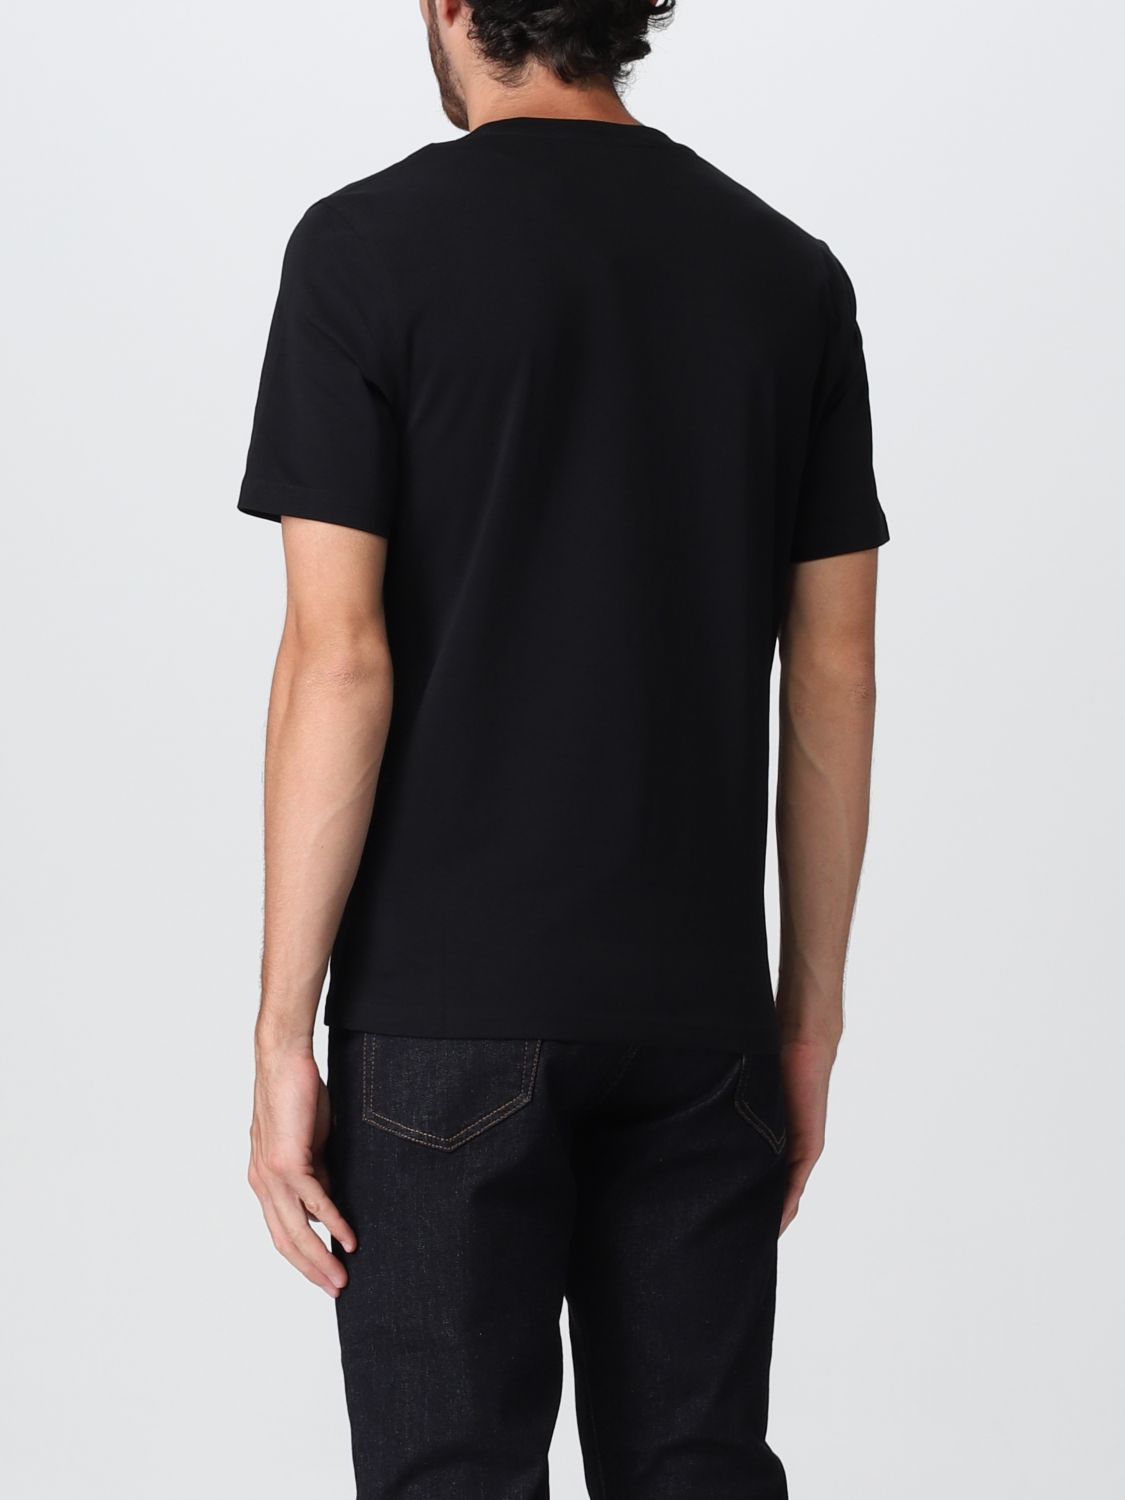 Tシャツ モスキーノ: Tシャツ Moschino Couture メンズ ブラック 2